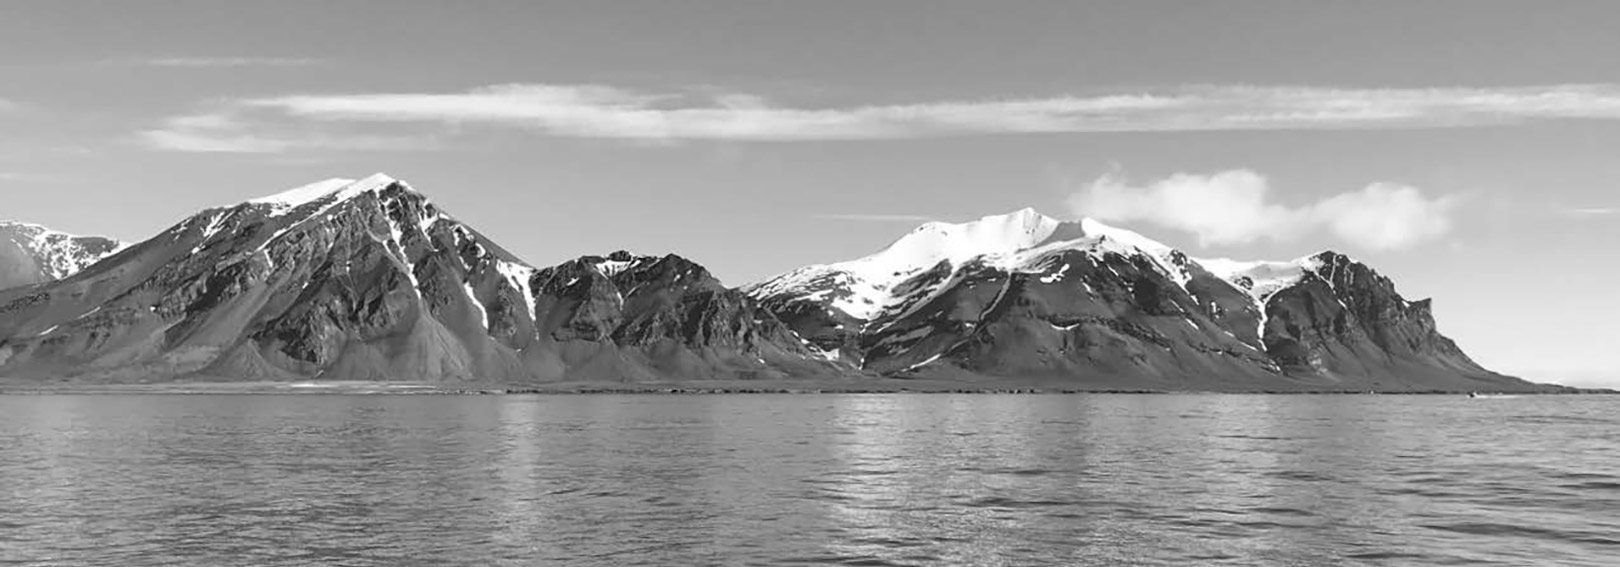 En fantastisk udsigt under fiskeriet ved Svalbard